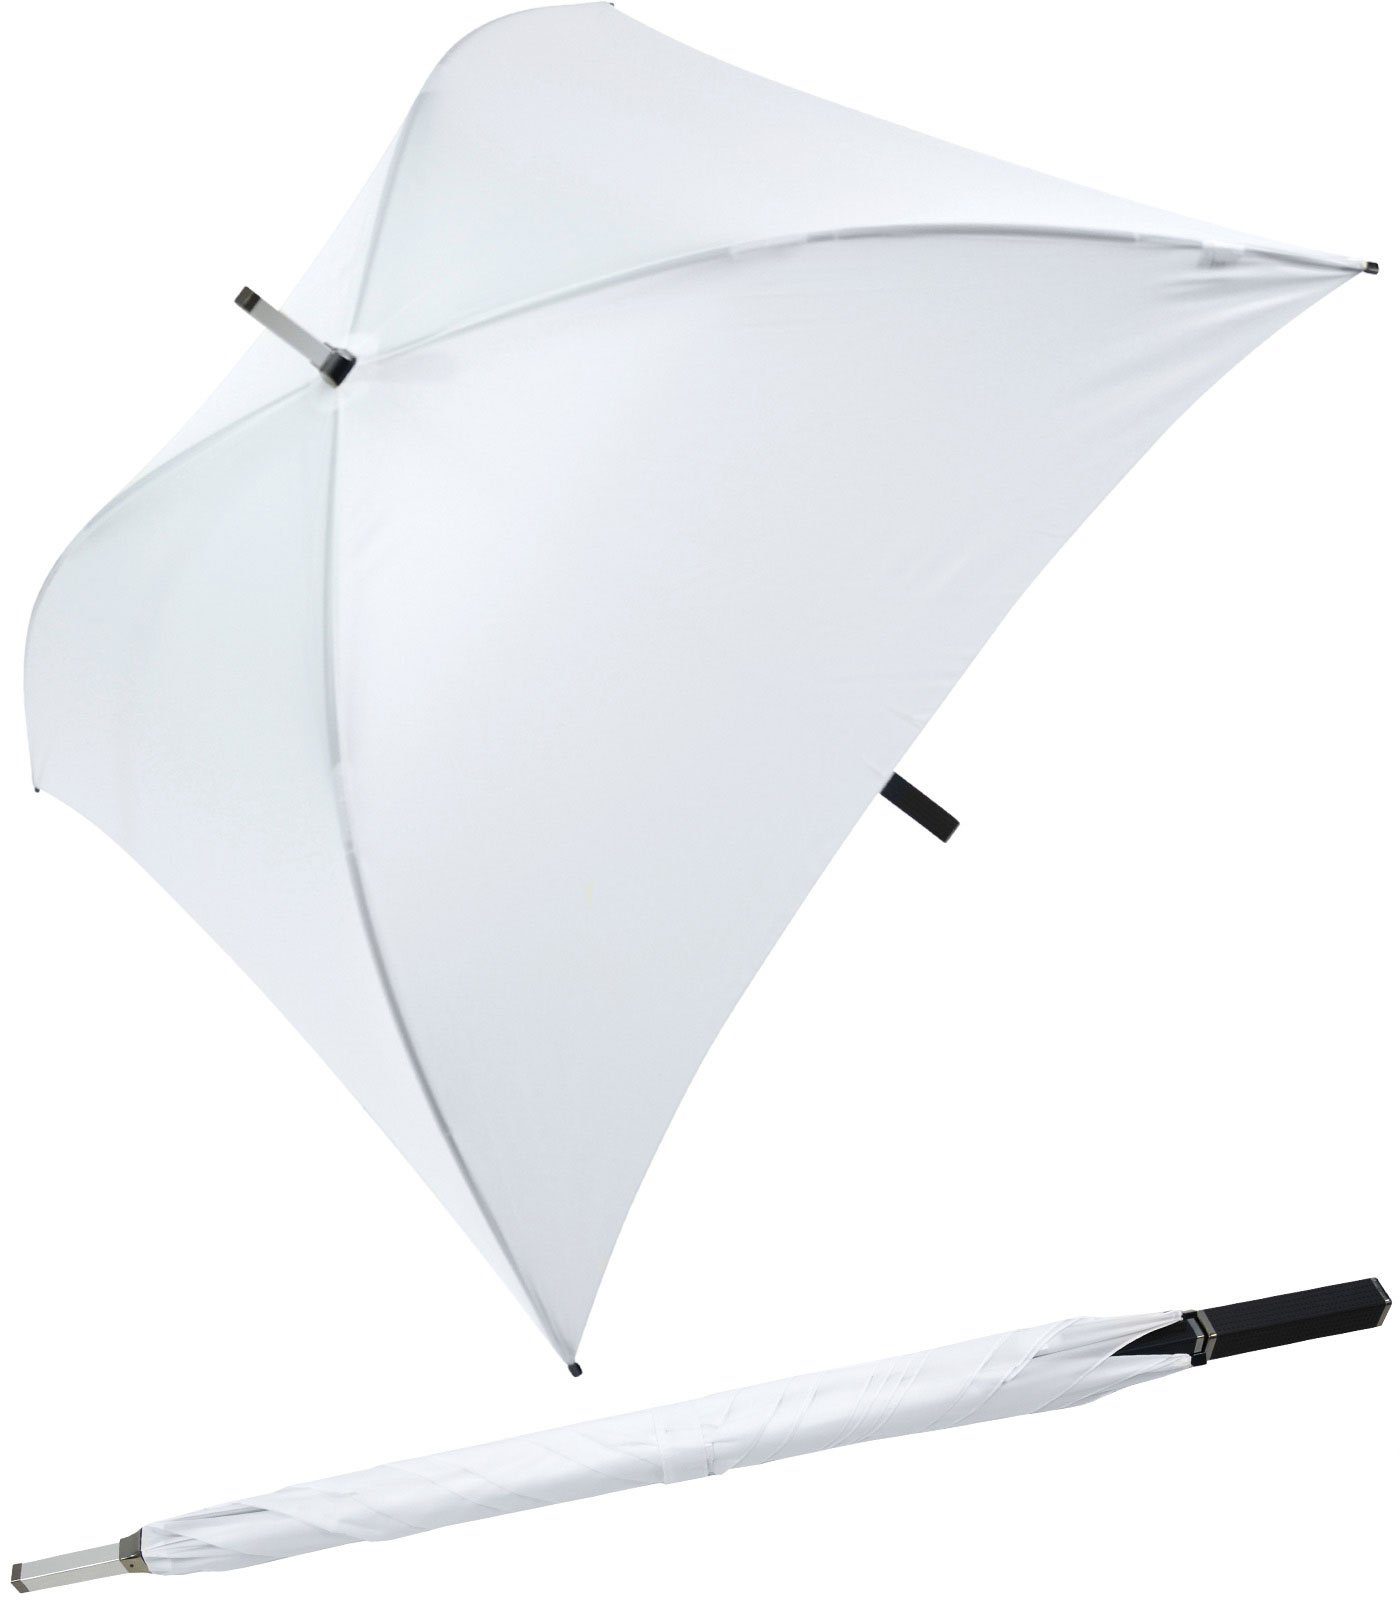 Impliva Langregenschirm All Square® voll quadratischer Regenschirm, der ganz besondere Regenschirm weiß